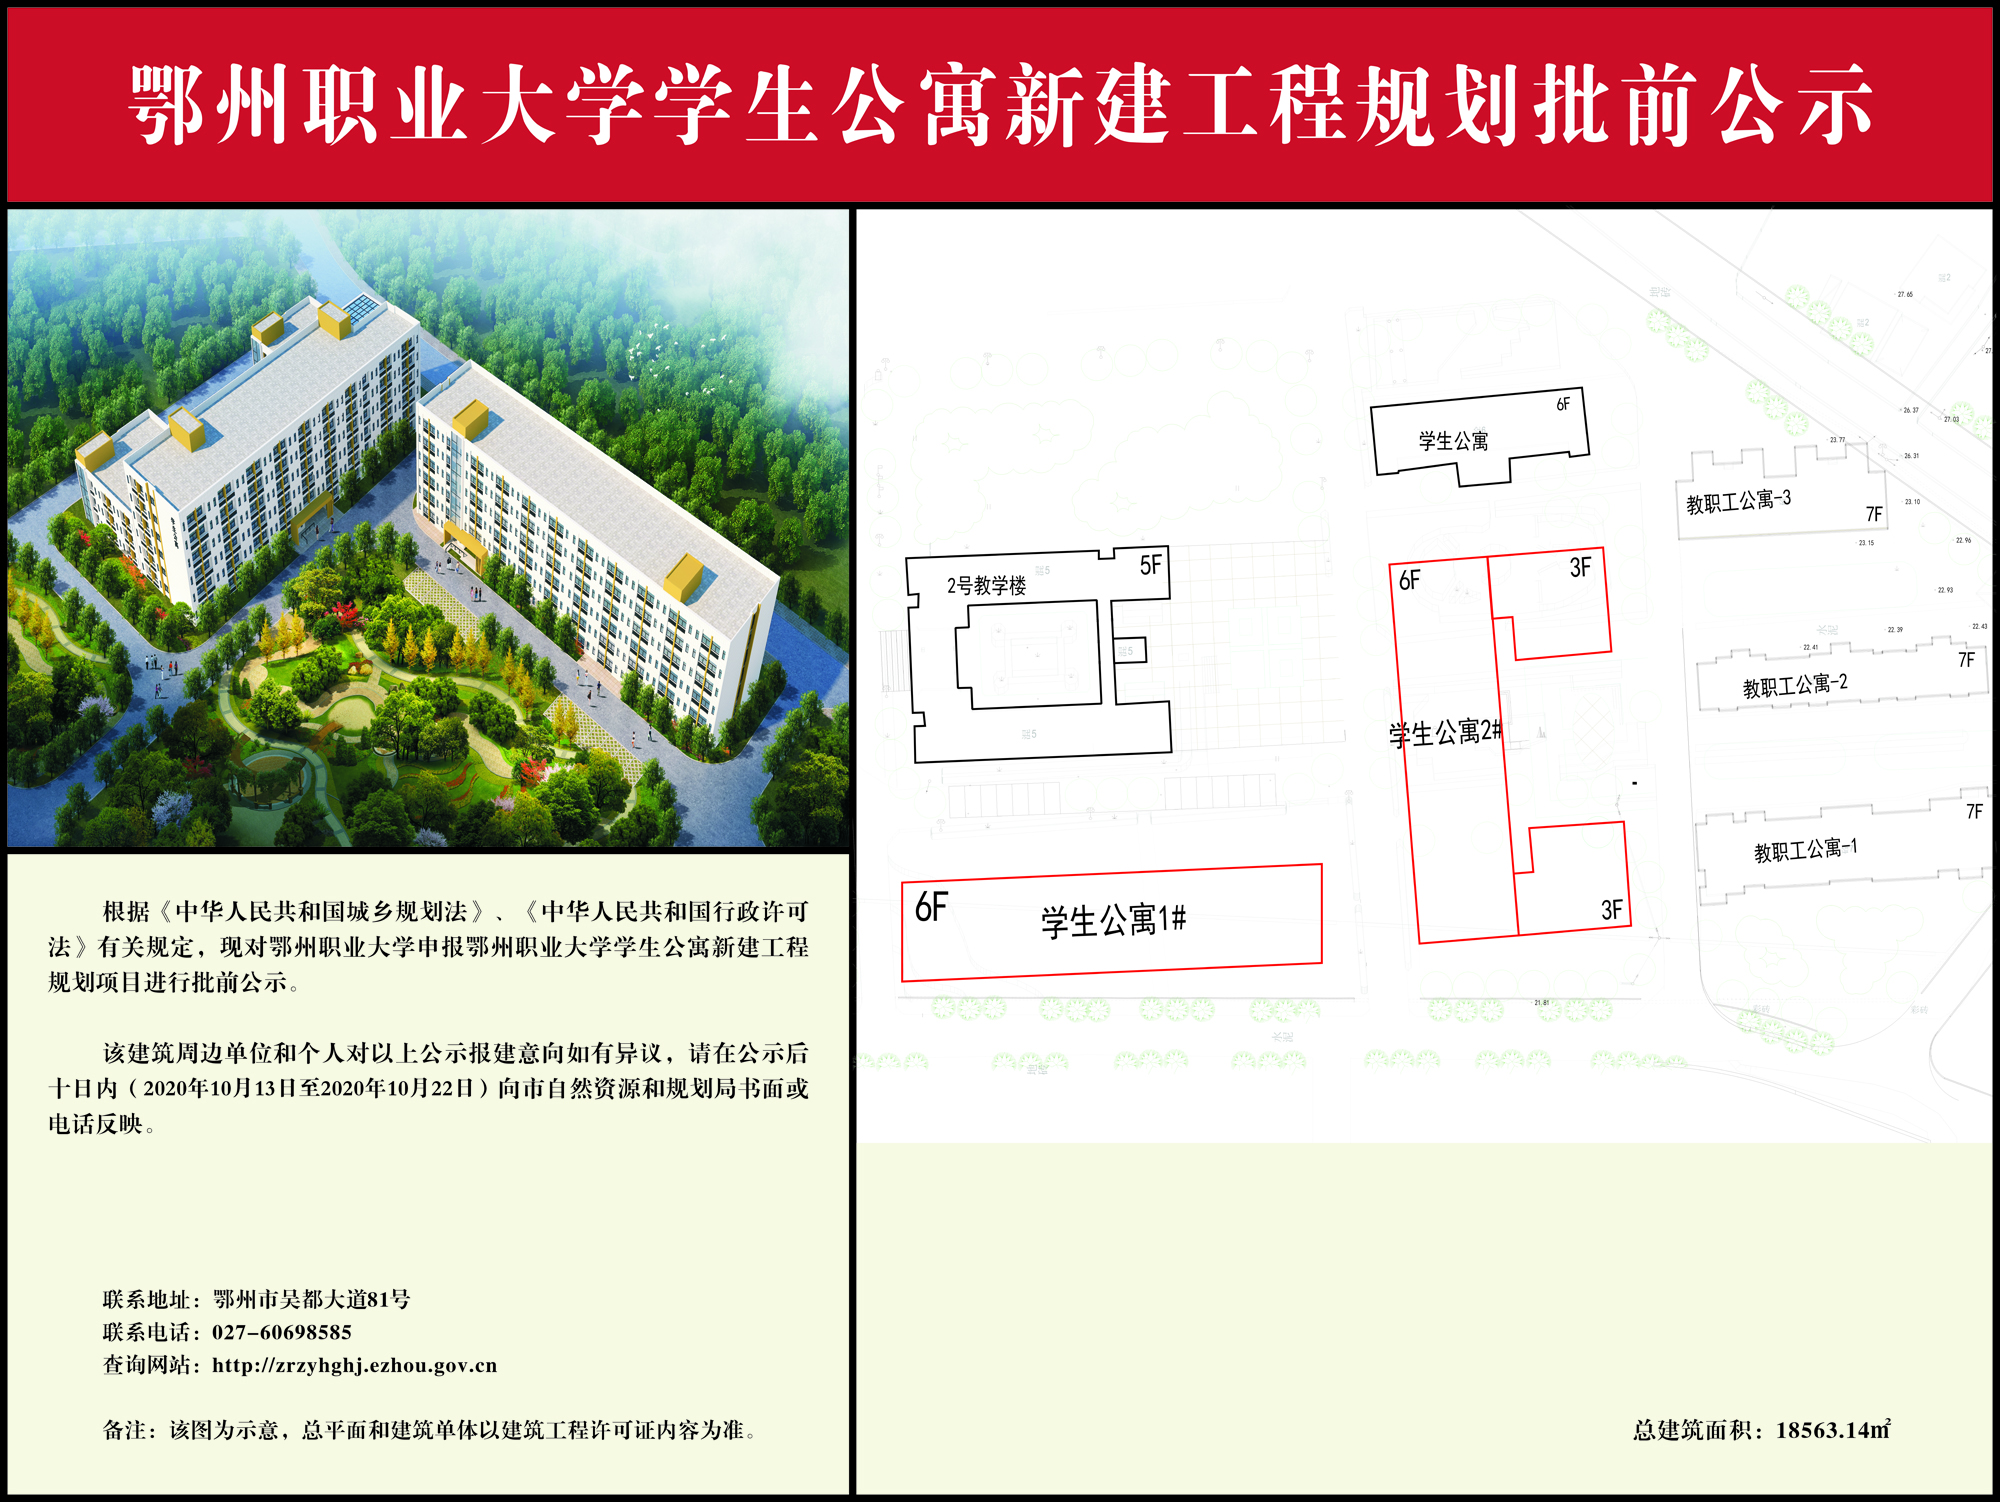 鄂州职业大学学生公寓新建工程 规划批前公示